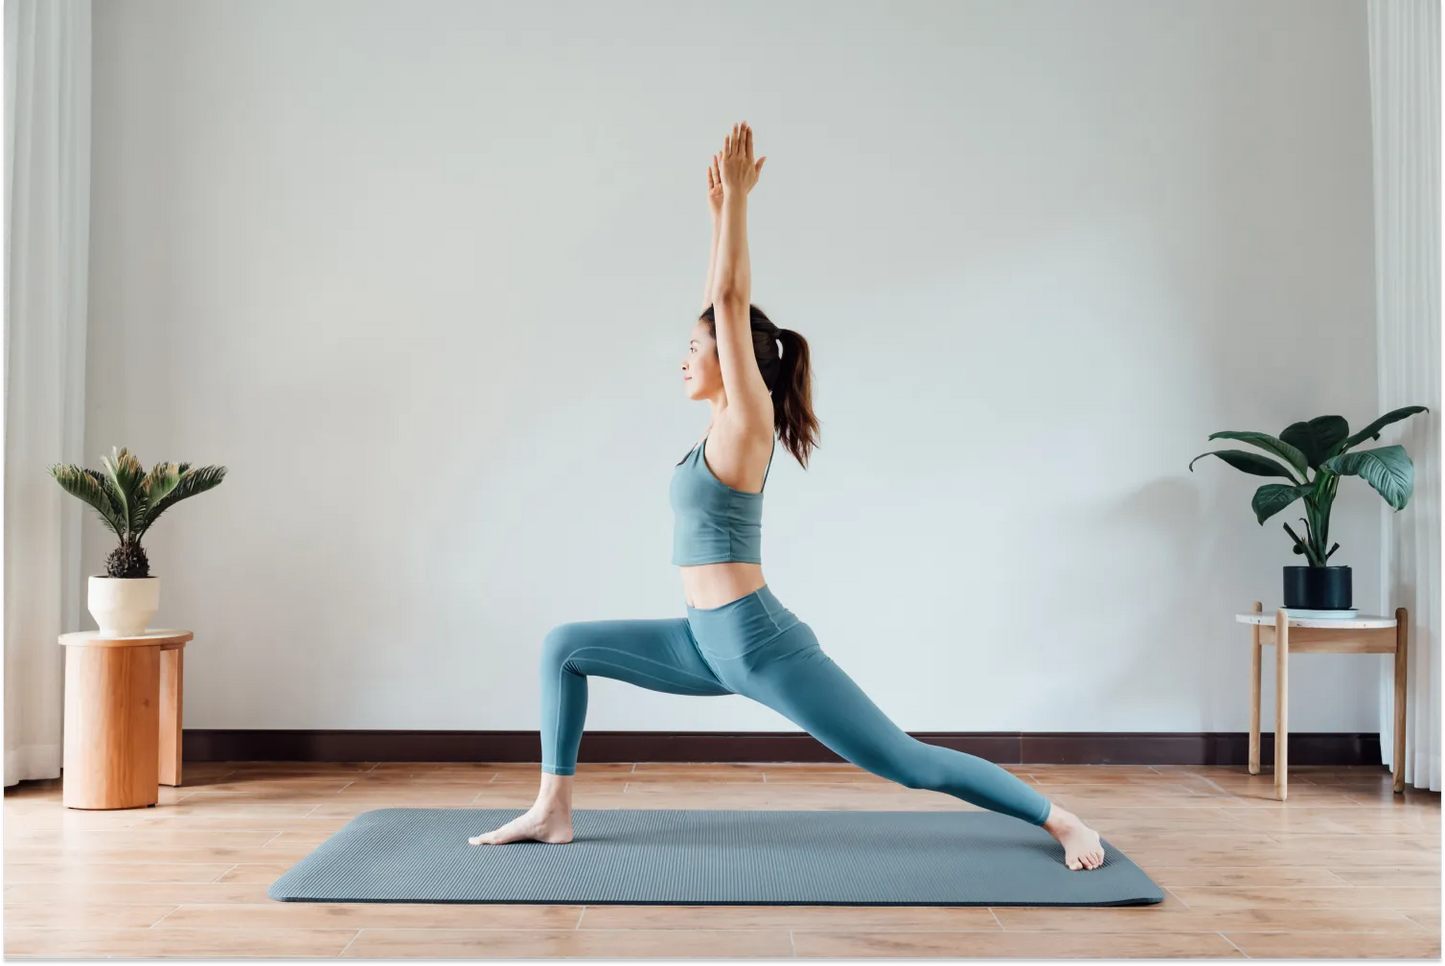 Basic Functional Yoga by Harmony Yoga & Wellness Studio